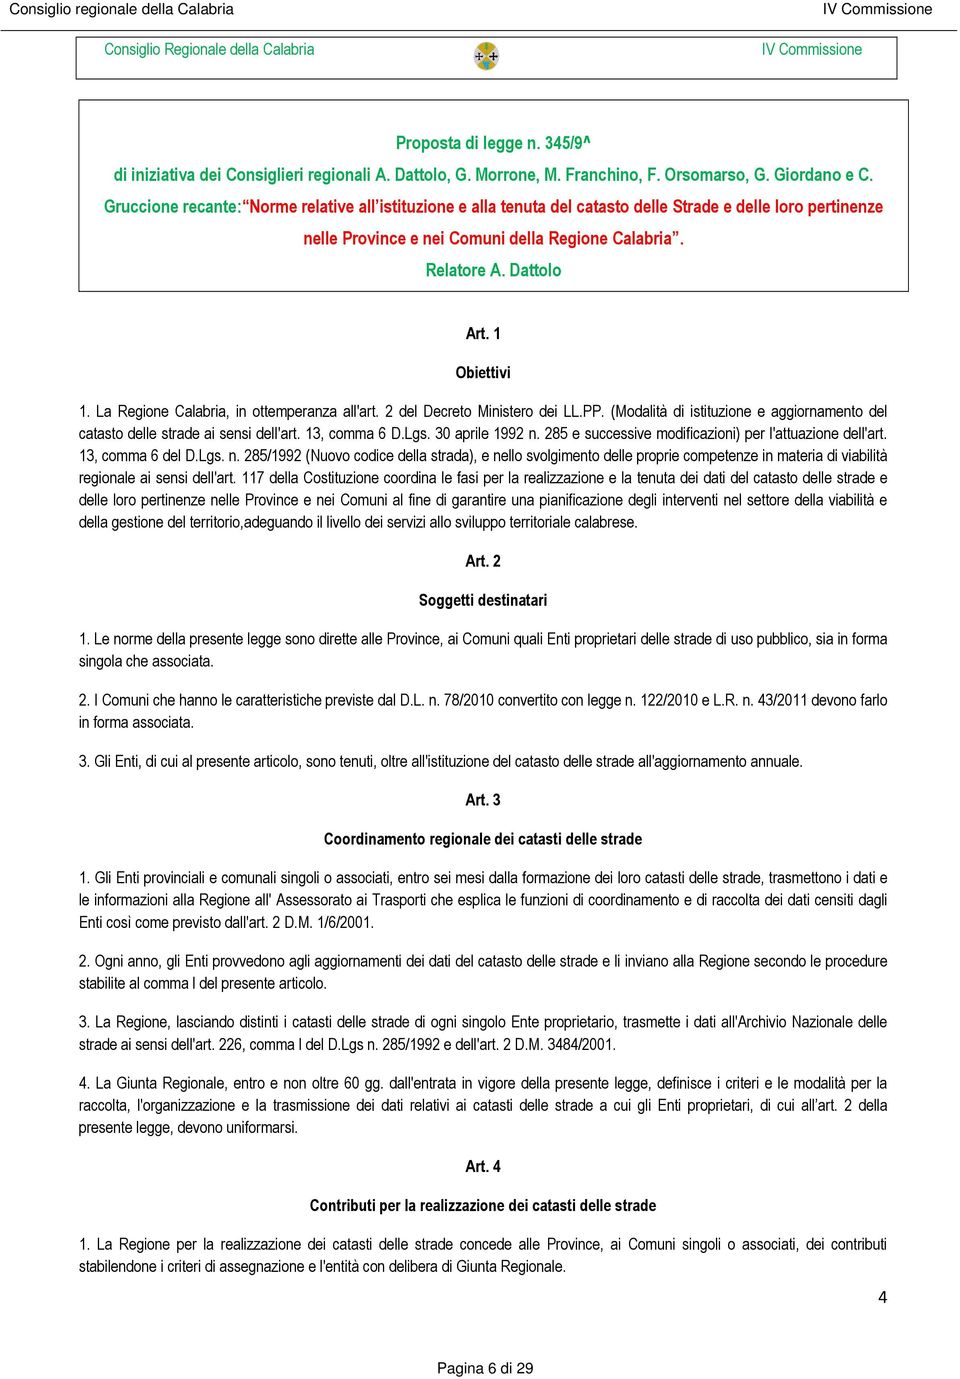 1 Obiettivi 1. La Regione Calabria, in ottemperanza all'art. 2 del Decreto Ministero dei LL.PP. (Modalità di istituzione e aggiornamento del catasto delle strade ai sensi dell'art. 13, comma 6 D.Lgs.